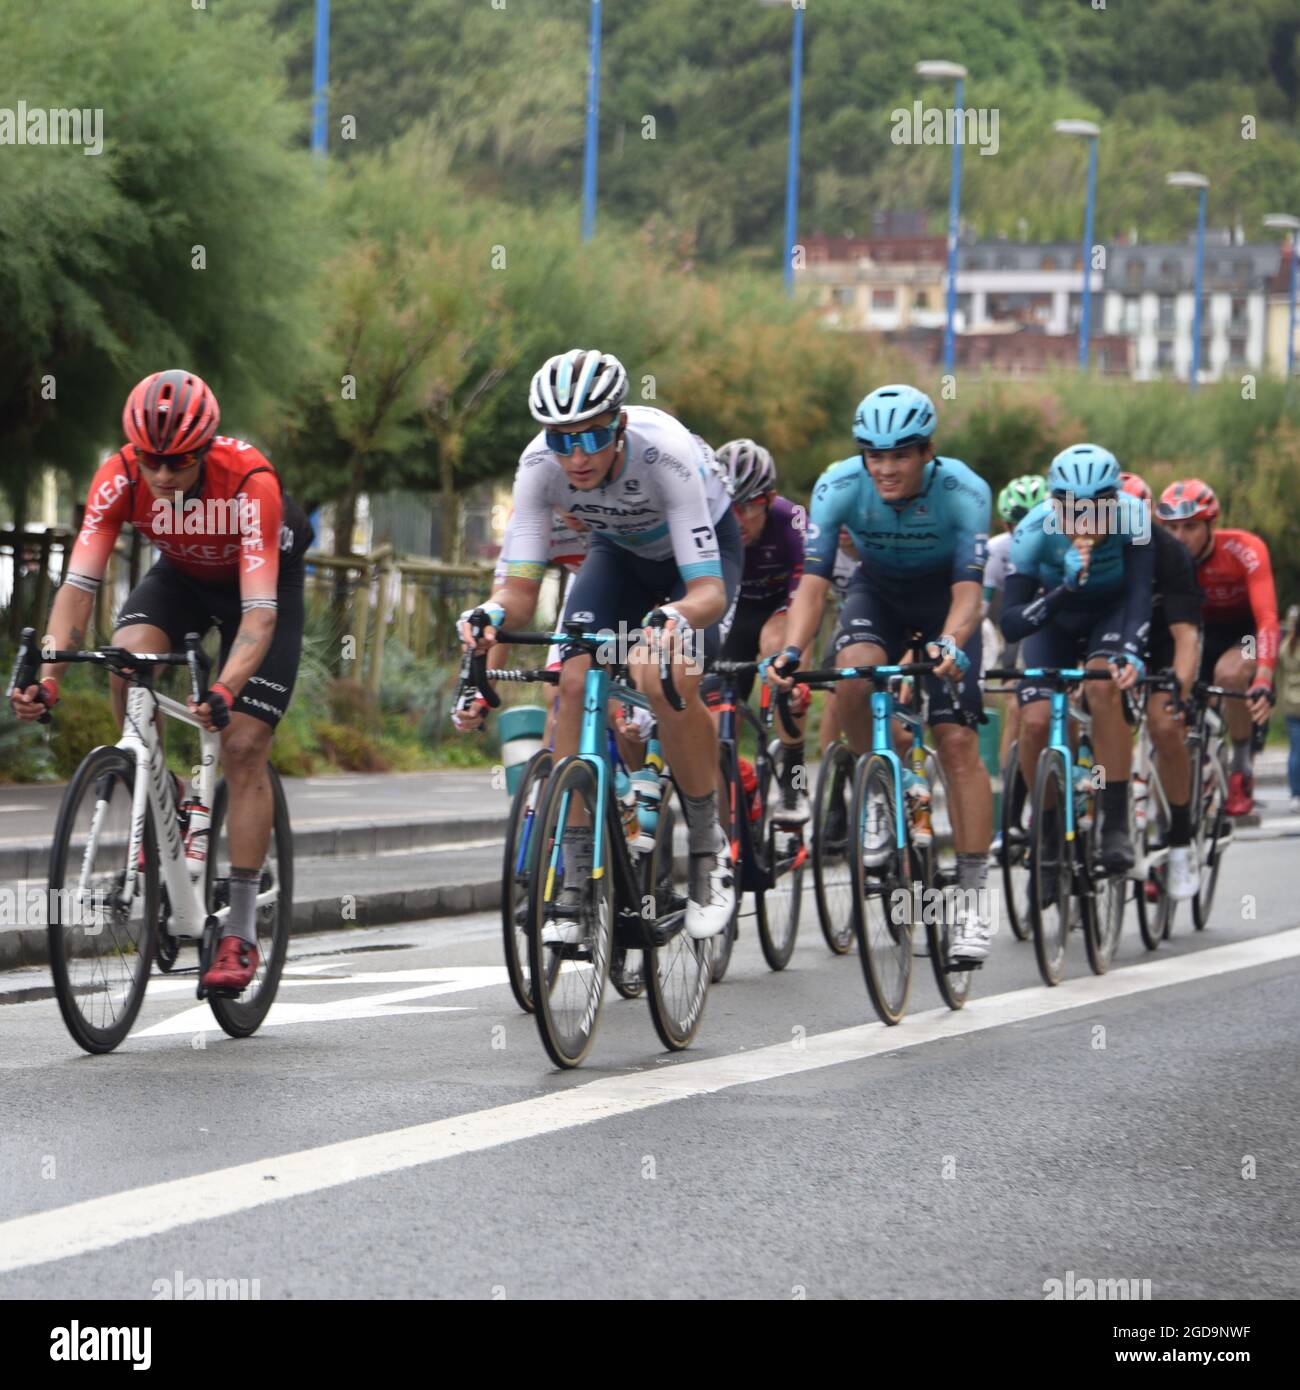 San Sebastian, Spagna - 1 agosto 2021: Squadre ciclistiche professionali gareggiano nella gara ciclistica di Clasica San Sebastian Foto Stock